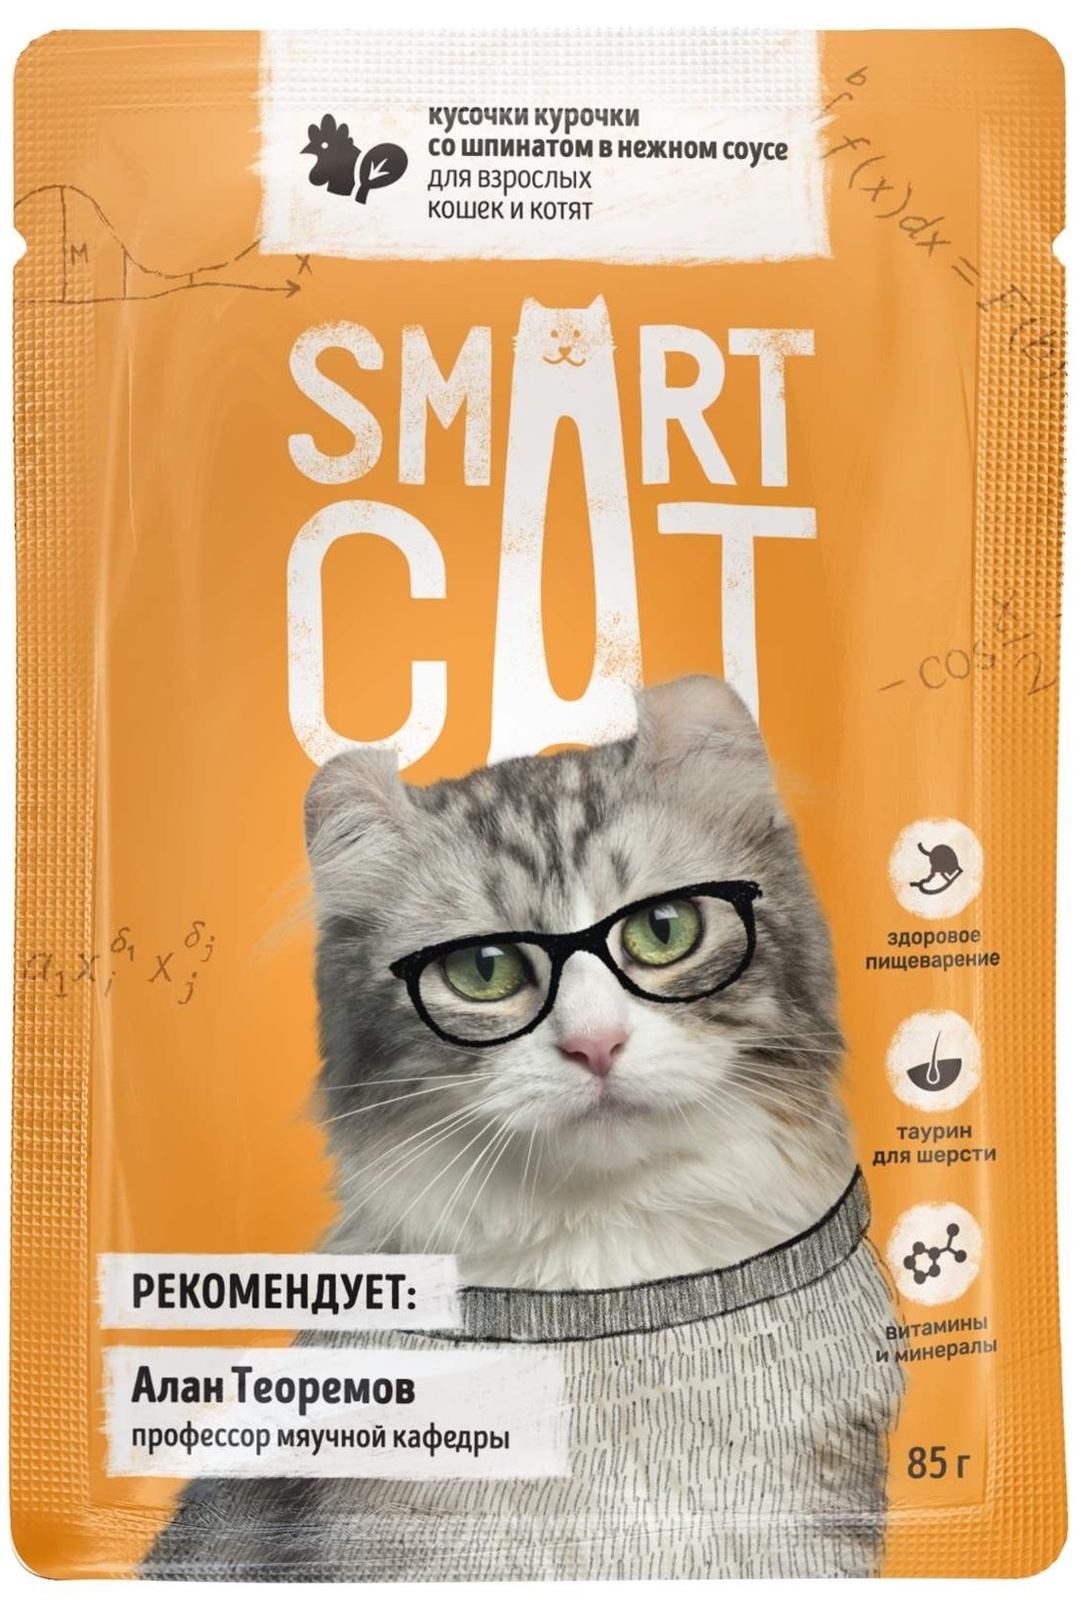 цена Smart Cat Smart Cat паучи для взрослых кошек и котят: кусочки курочки со шпинатом в нежном соусе (85 г)